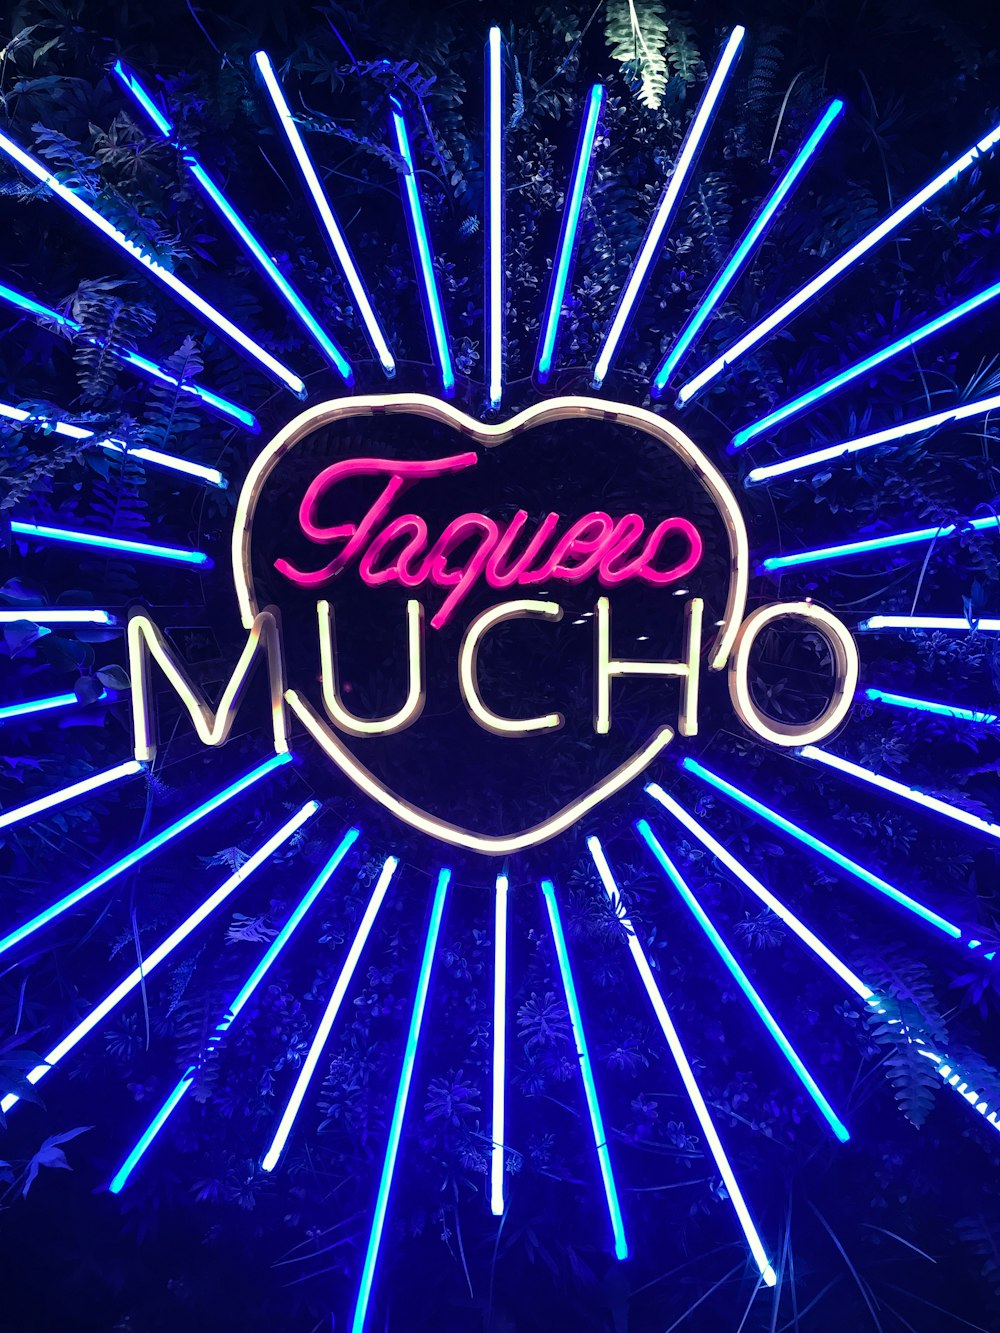 lighted Toquero Mucho signage